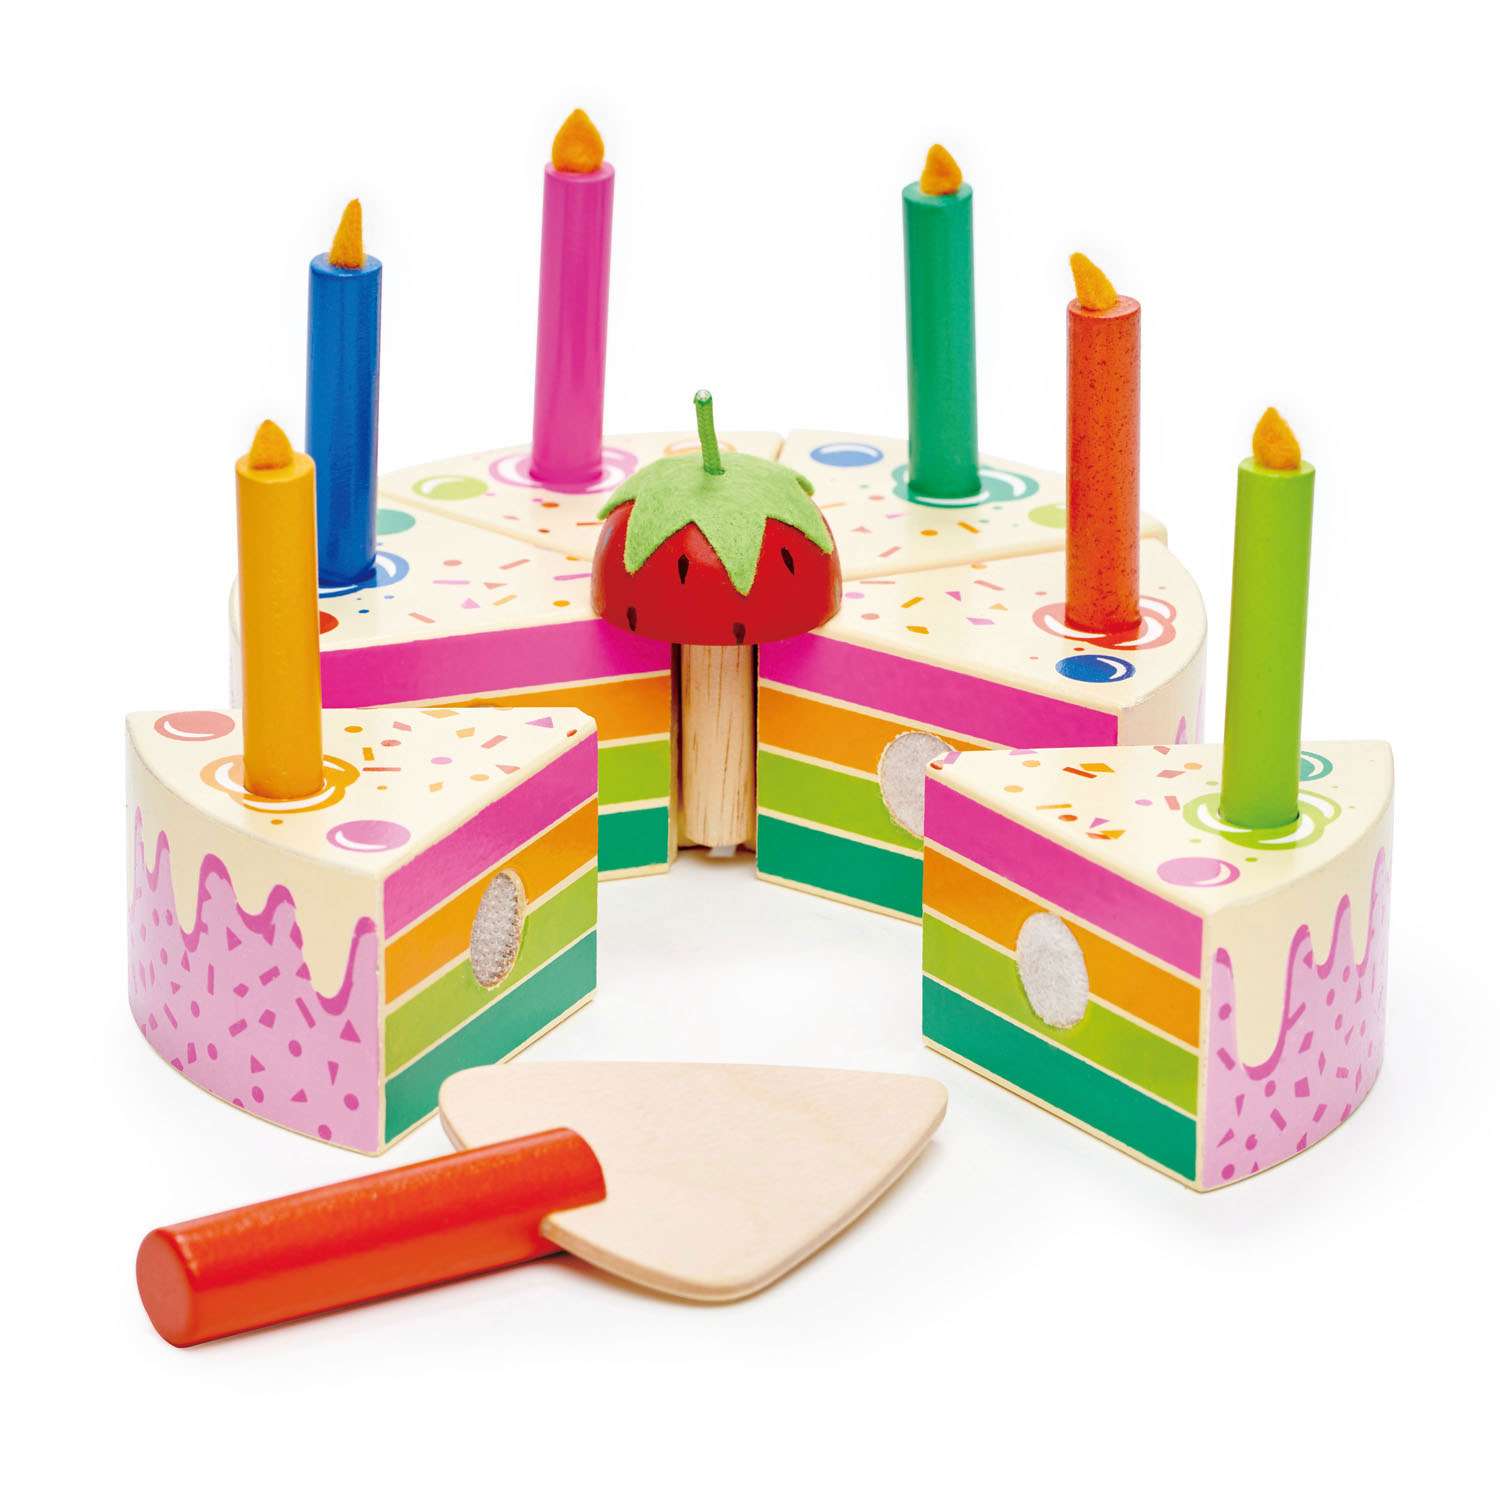 Tender Leaf Toys ของเล่นไม้ ของเล่นบทบาทสมมติ เค้กวันเกิดสายรุ้ง Rainbow Birthday Cake